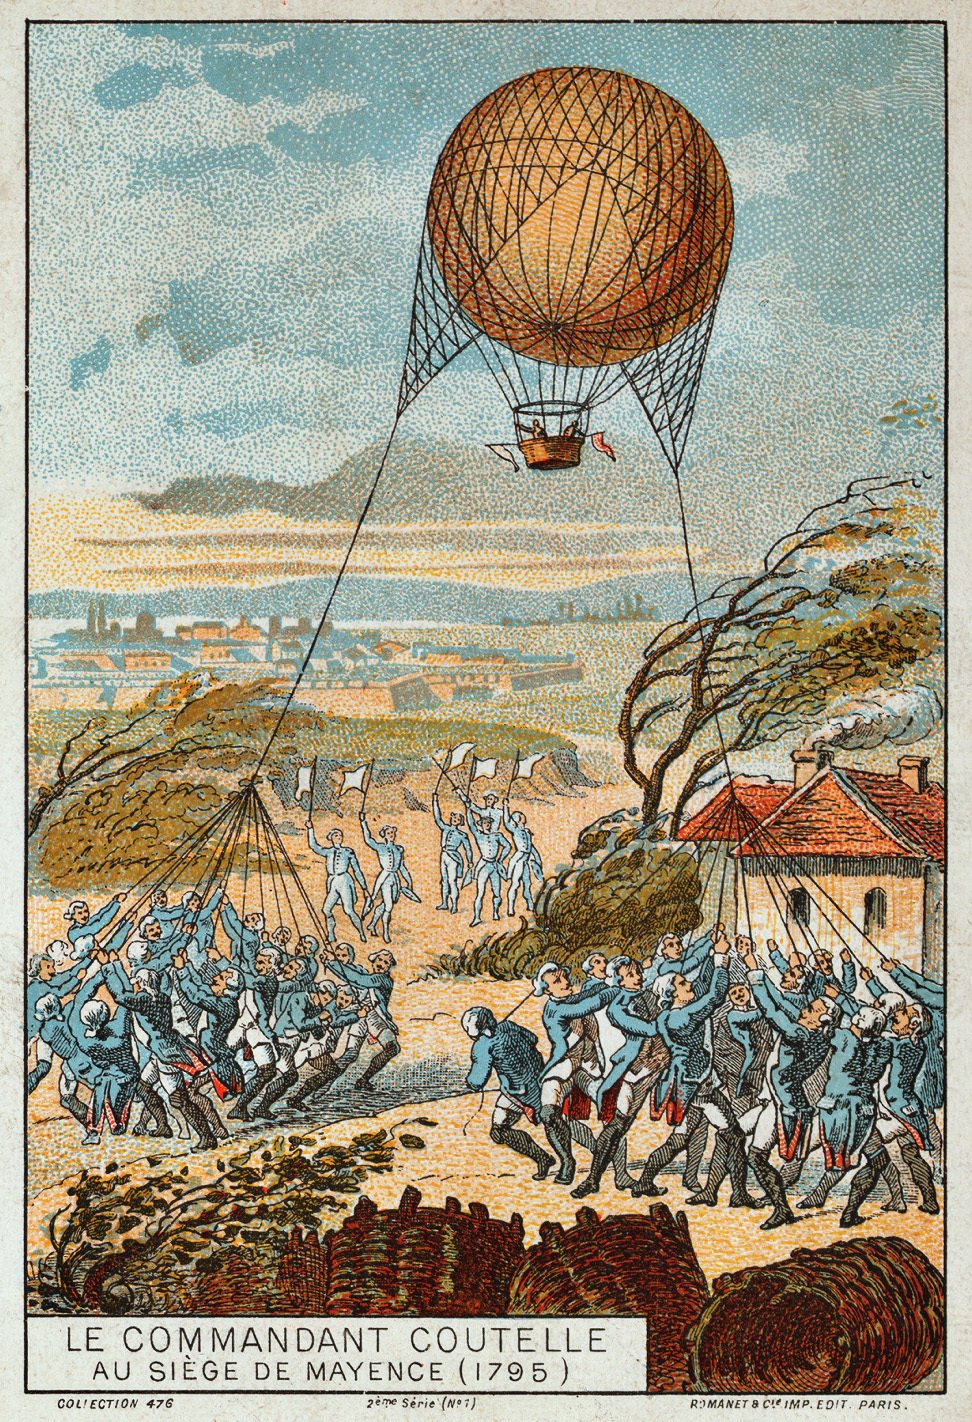 Obléhání Mohuče: Francouzská rota vzduchoplavců (1795).